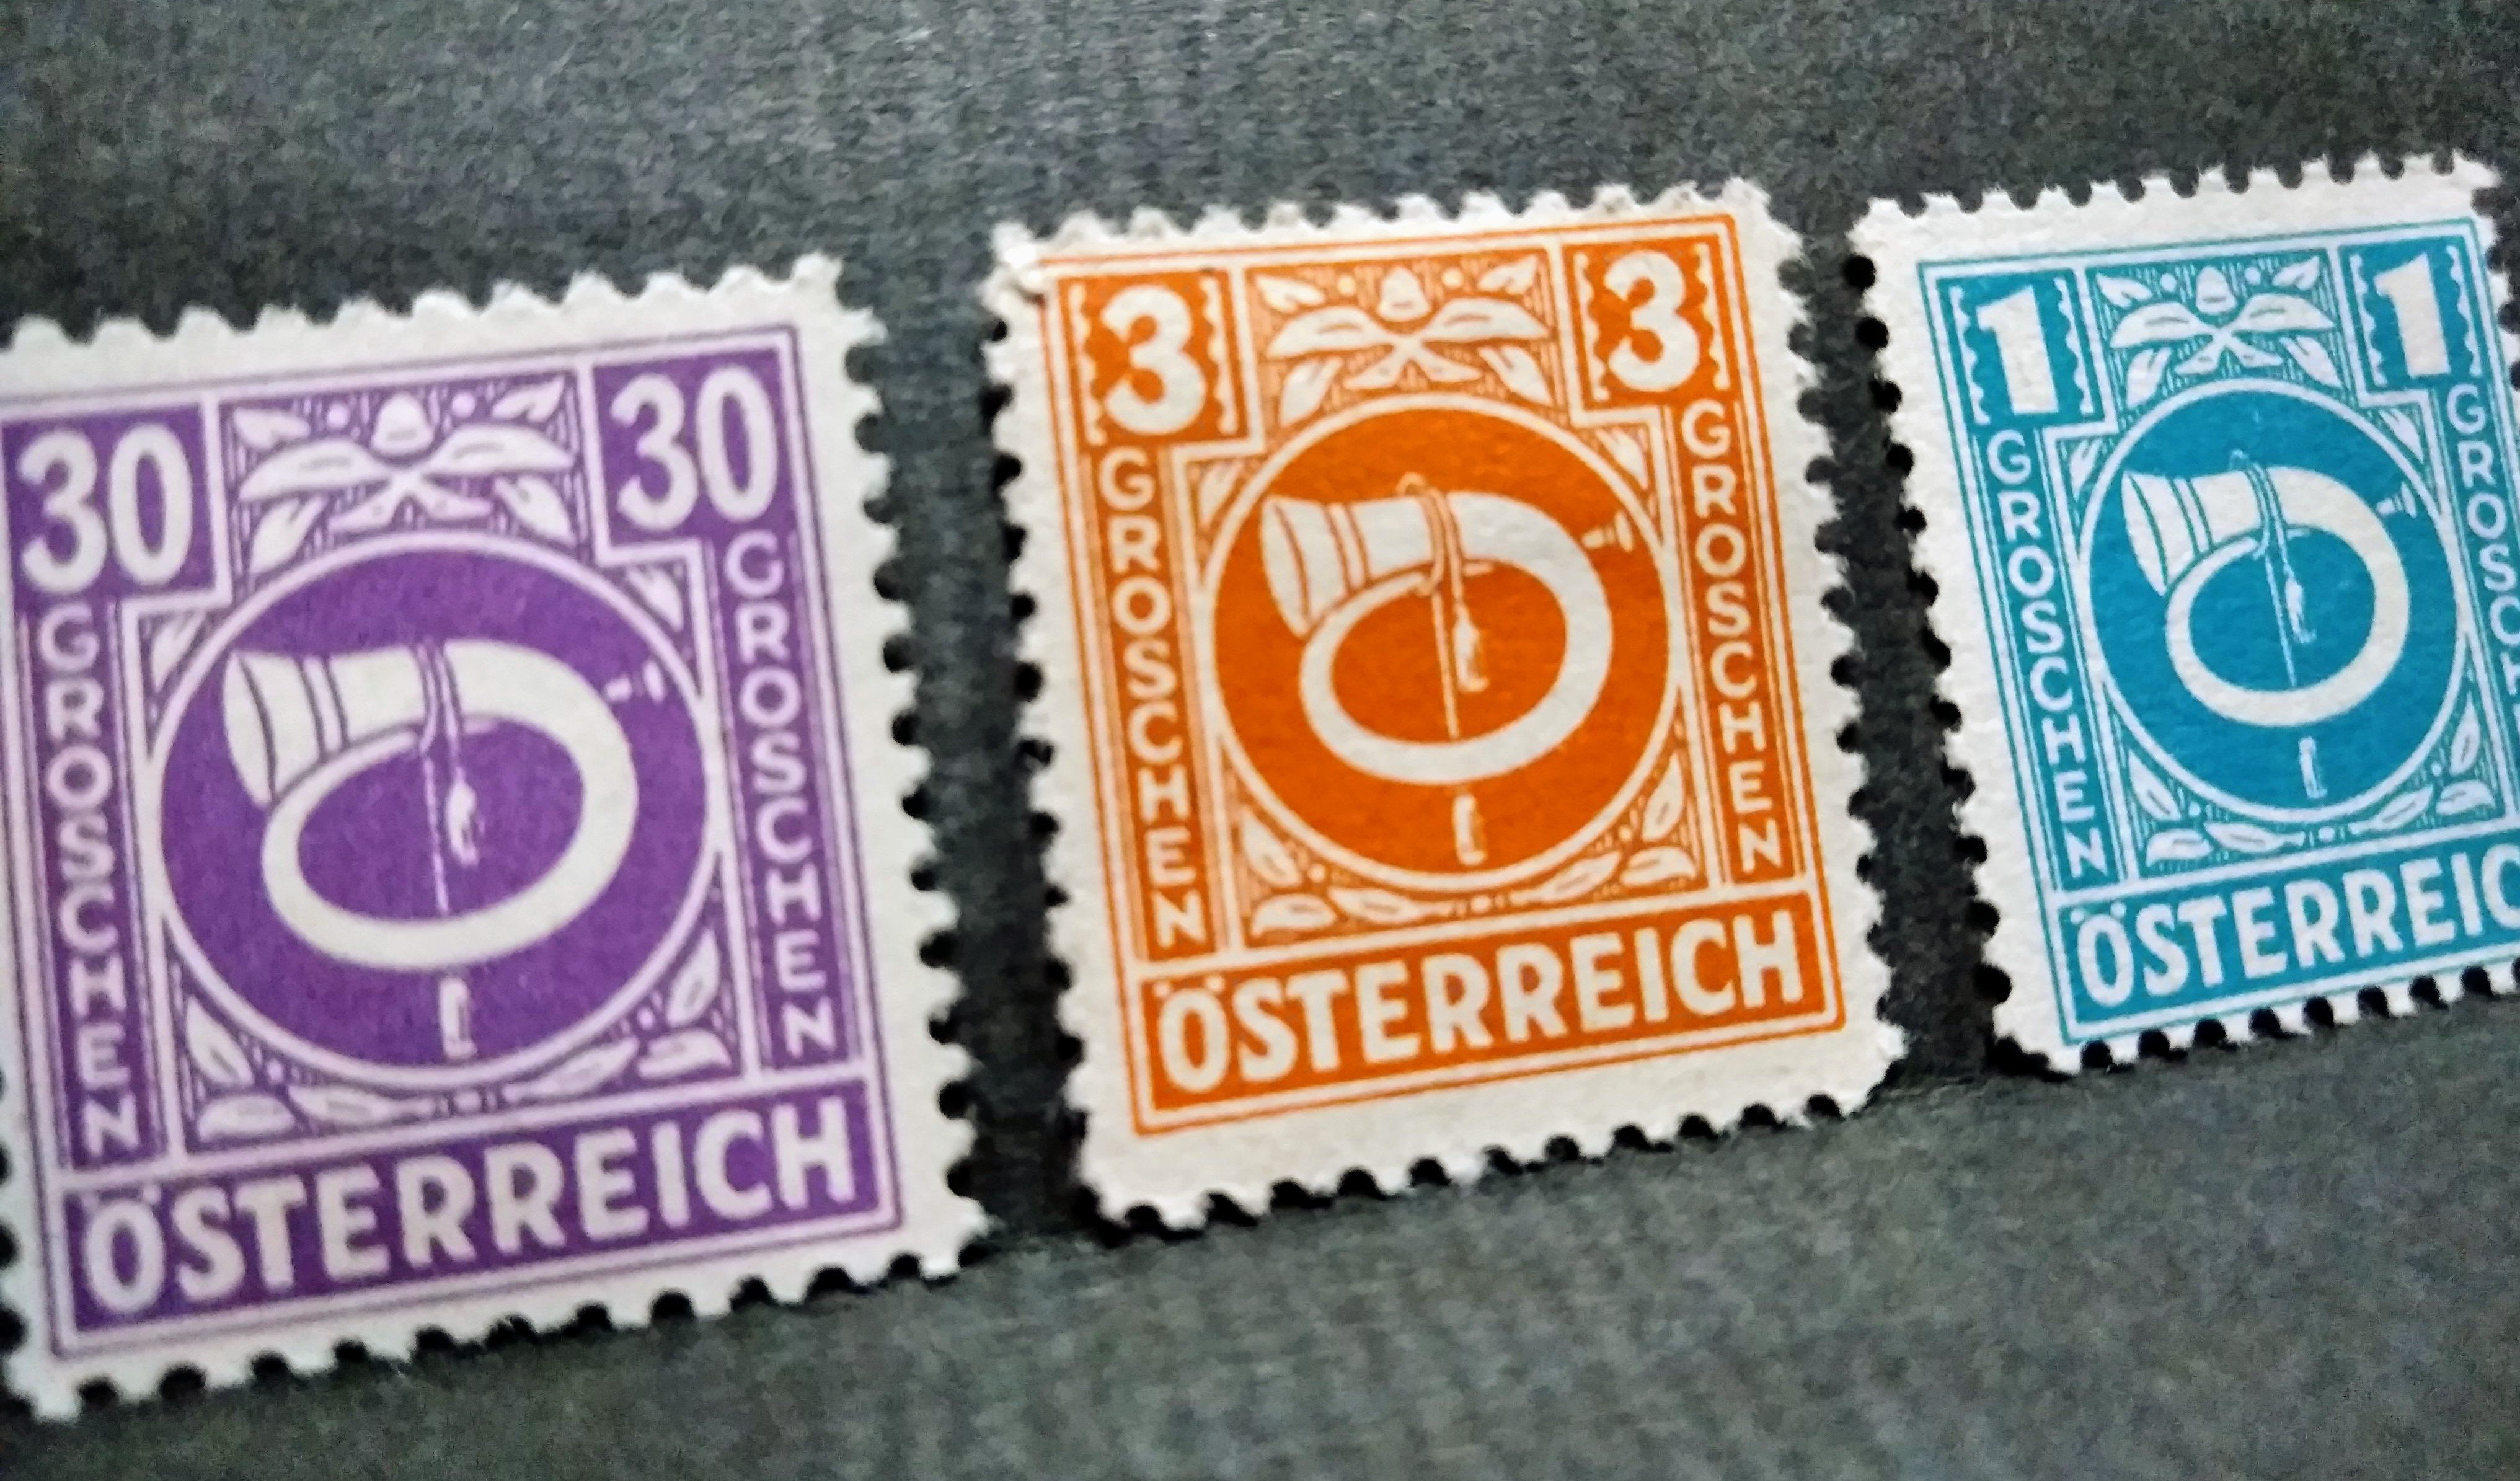 郵便マニアはラッパ切手に萌えますか ねこの郵便局では可愛い切手綺麗な切手印刷の素晴らしい切手もあります オーストリアの郵便ラッパ切手 19 10 15 神楽坂ねこの郵便局というなまえのお店